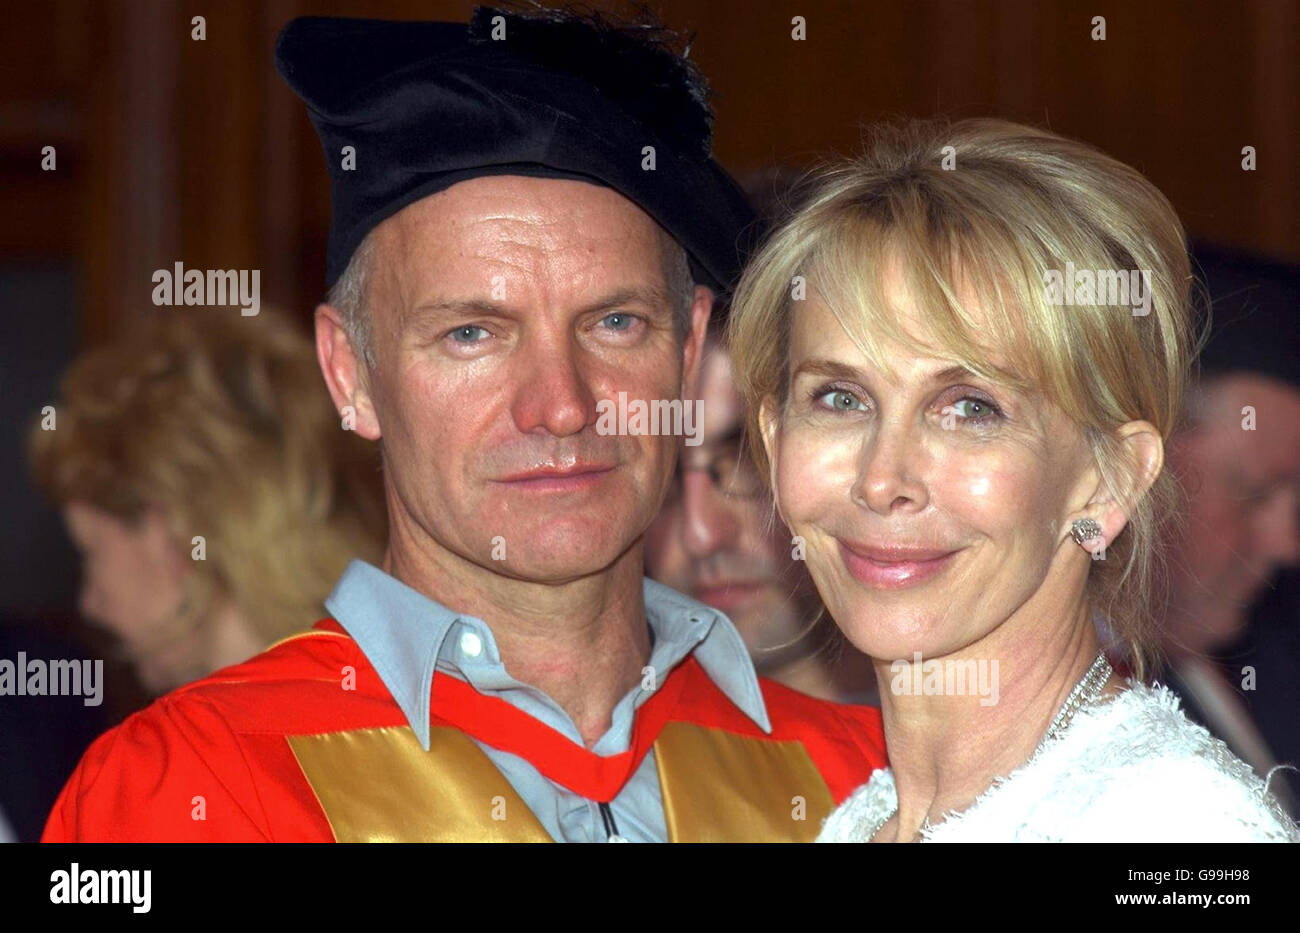 El cantante y compositor Sting está con su esposa Trudie Styler después de recibir un doctorado honorario en música de la Universidad de Newcastle. Foto de stock